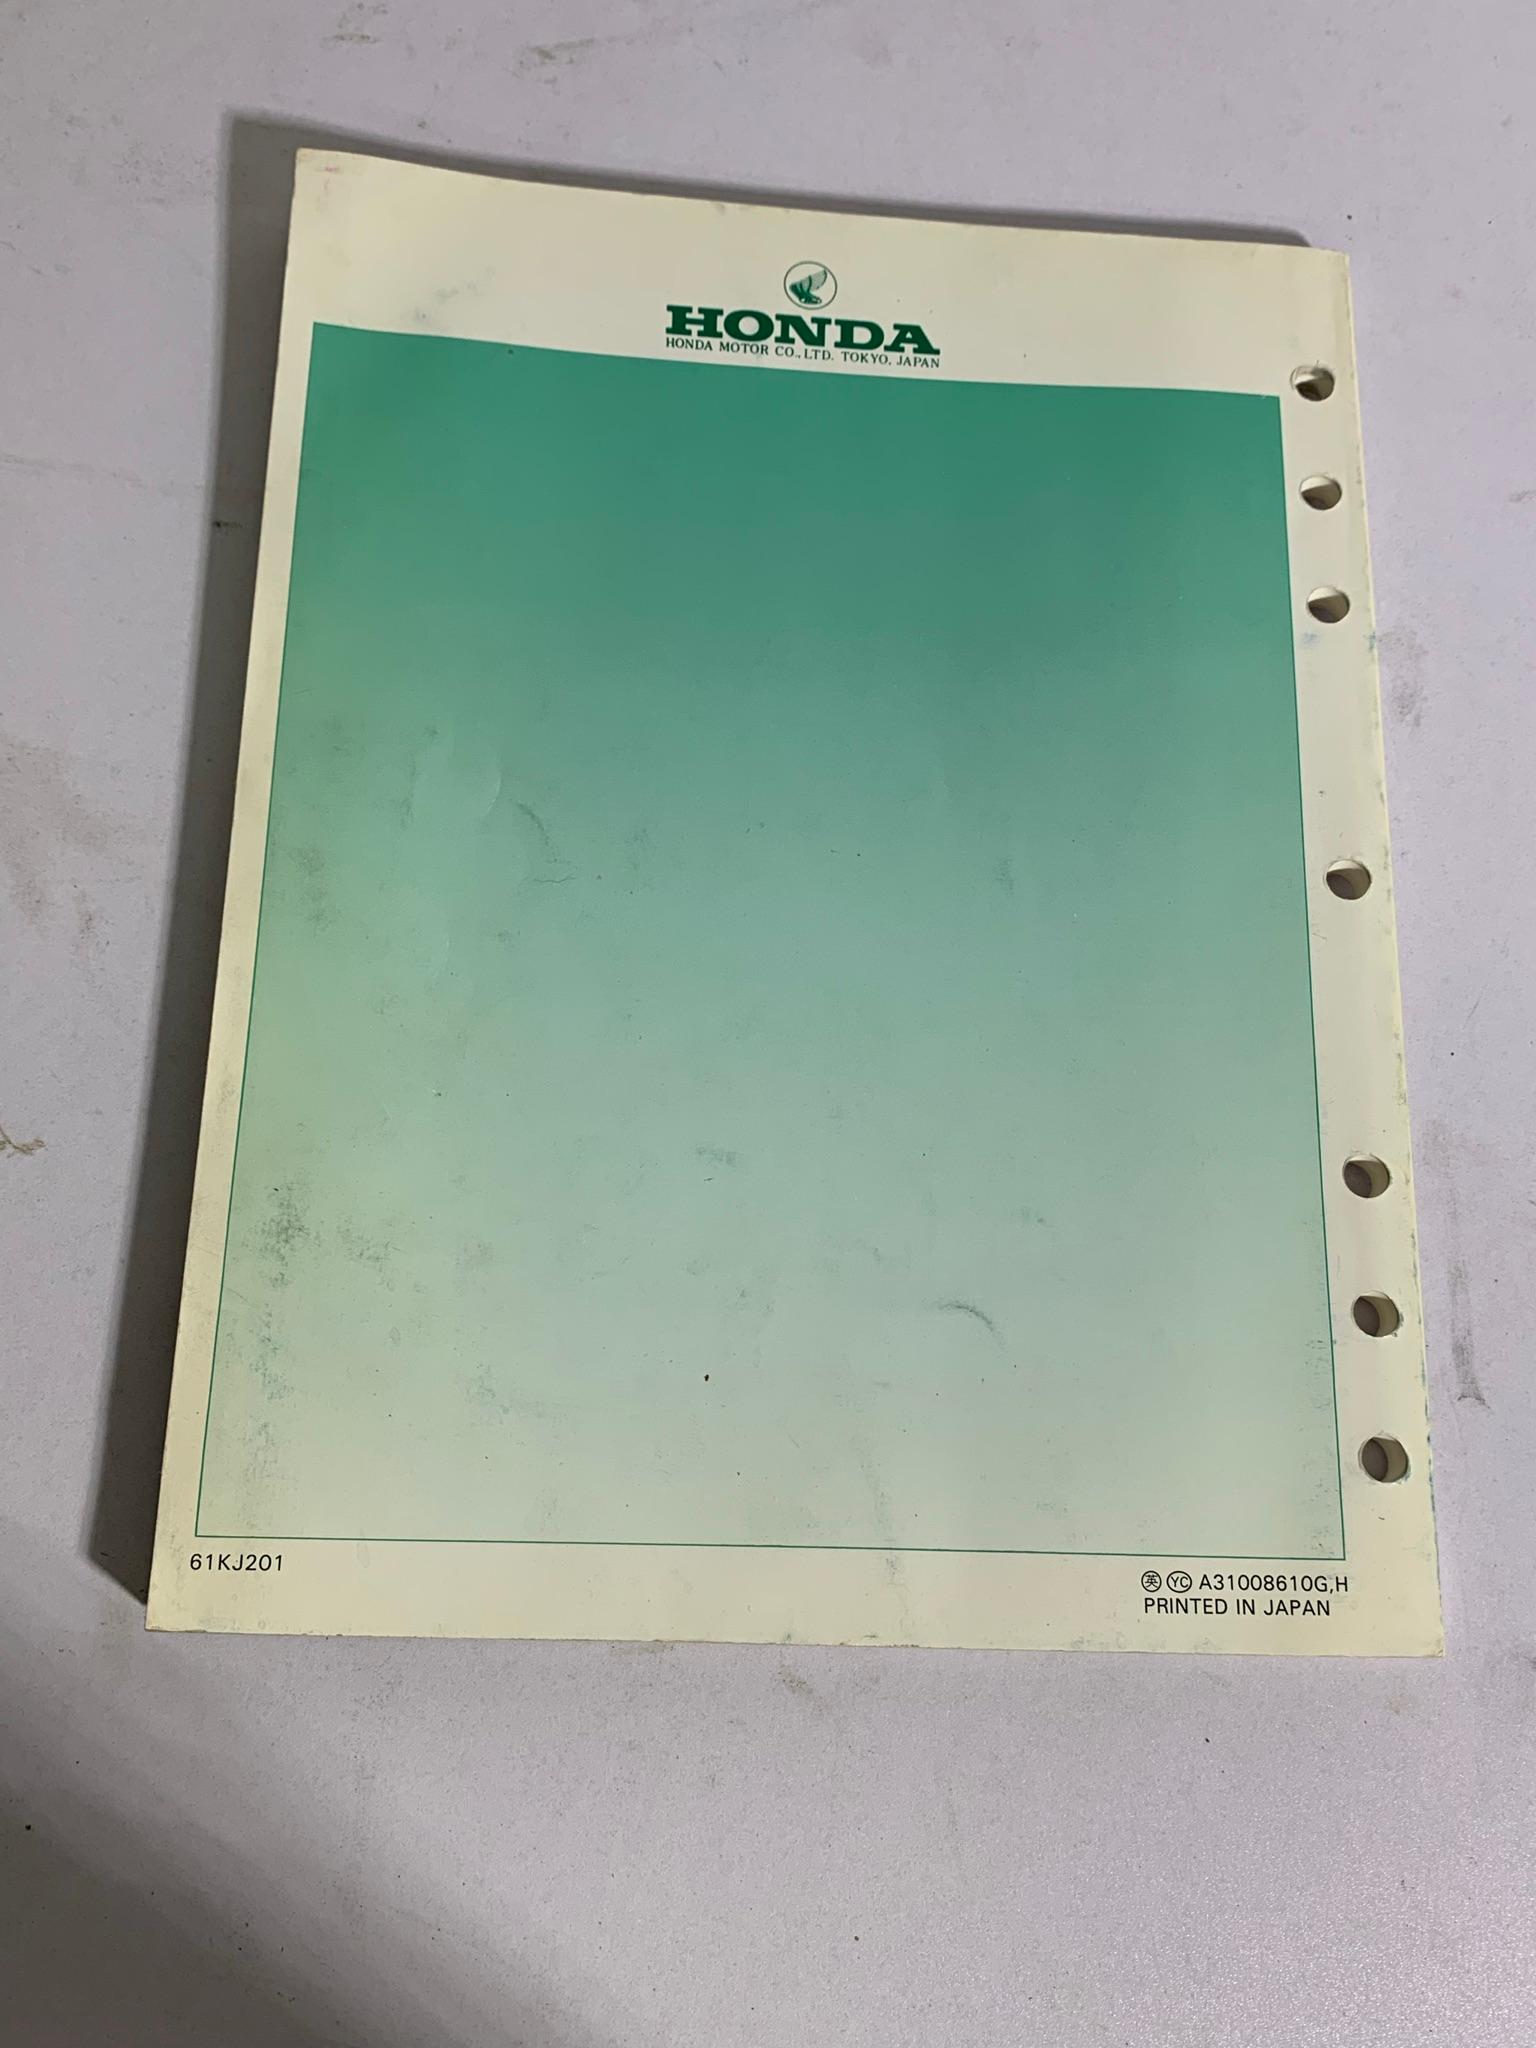 2 Honda Service Manuals